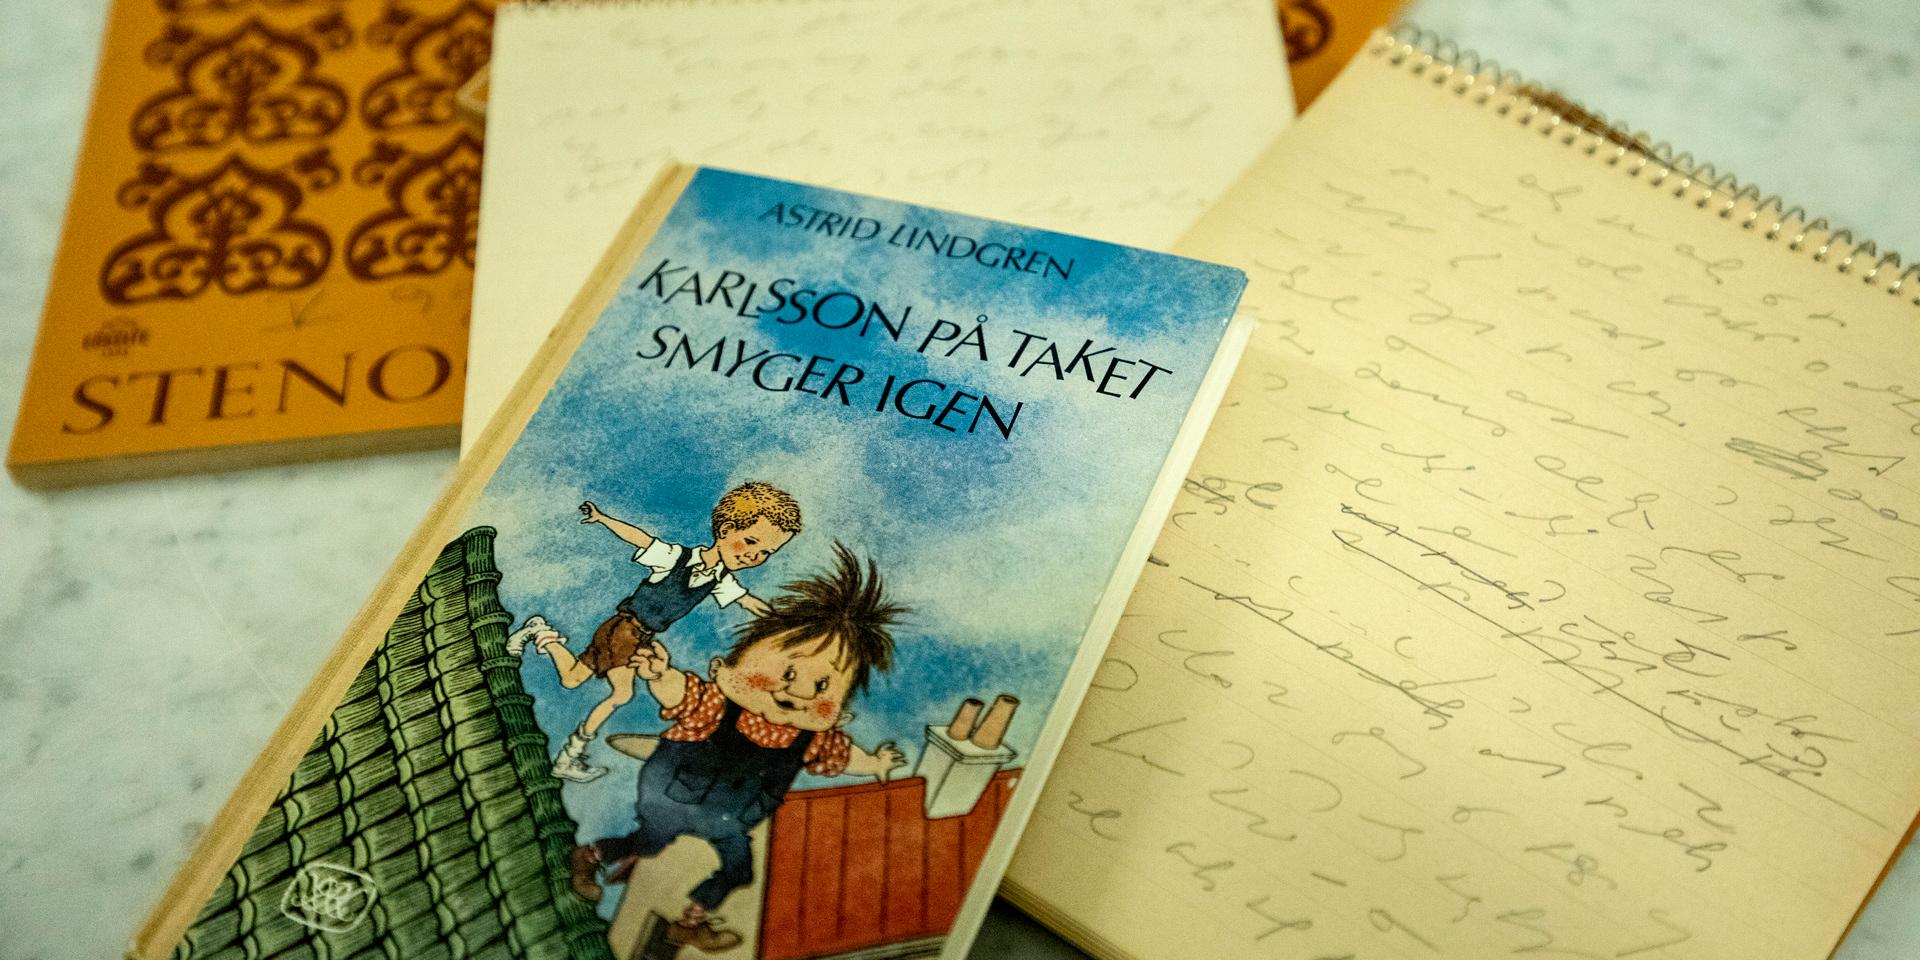 Stenogramblock med Astrid Lindgrens originalmanus till 'Karlsson på taket'.